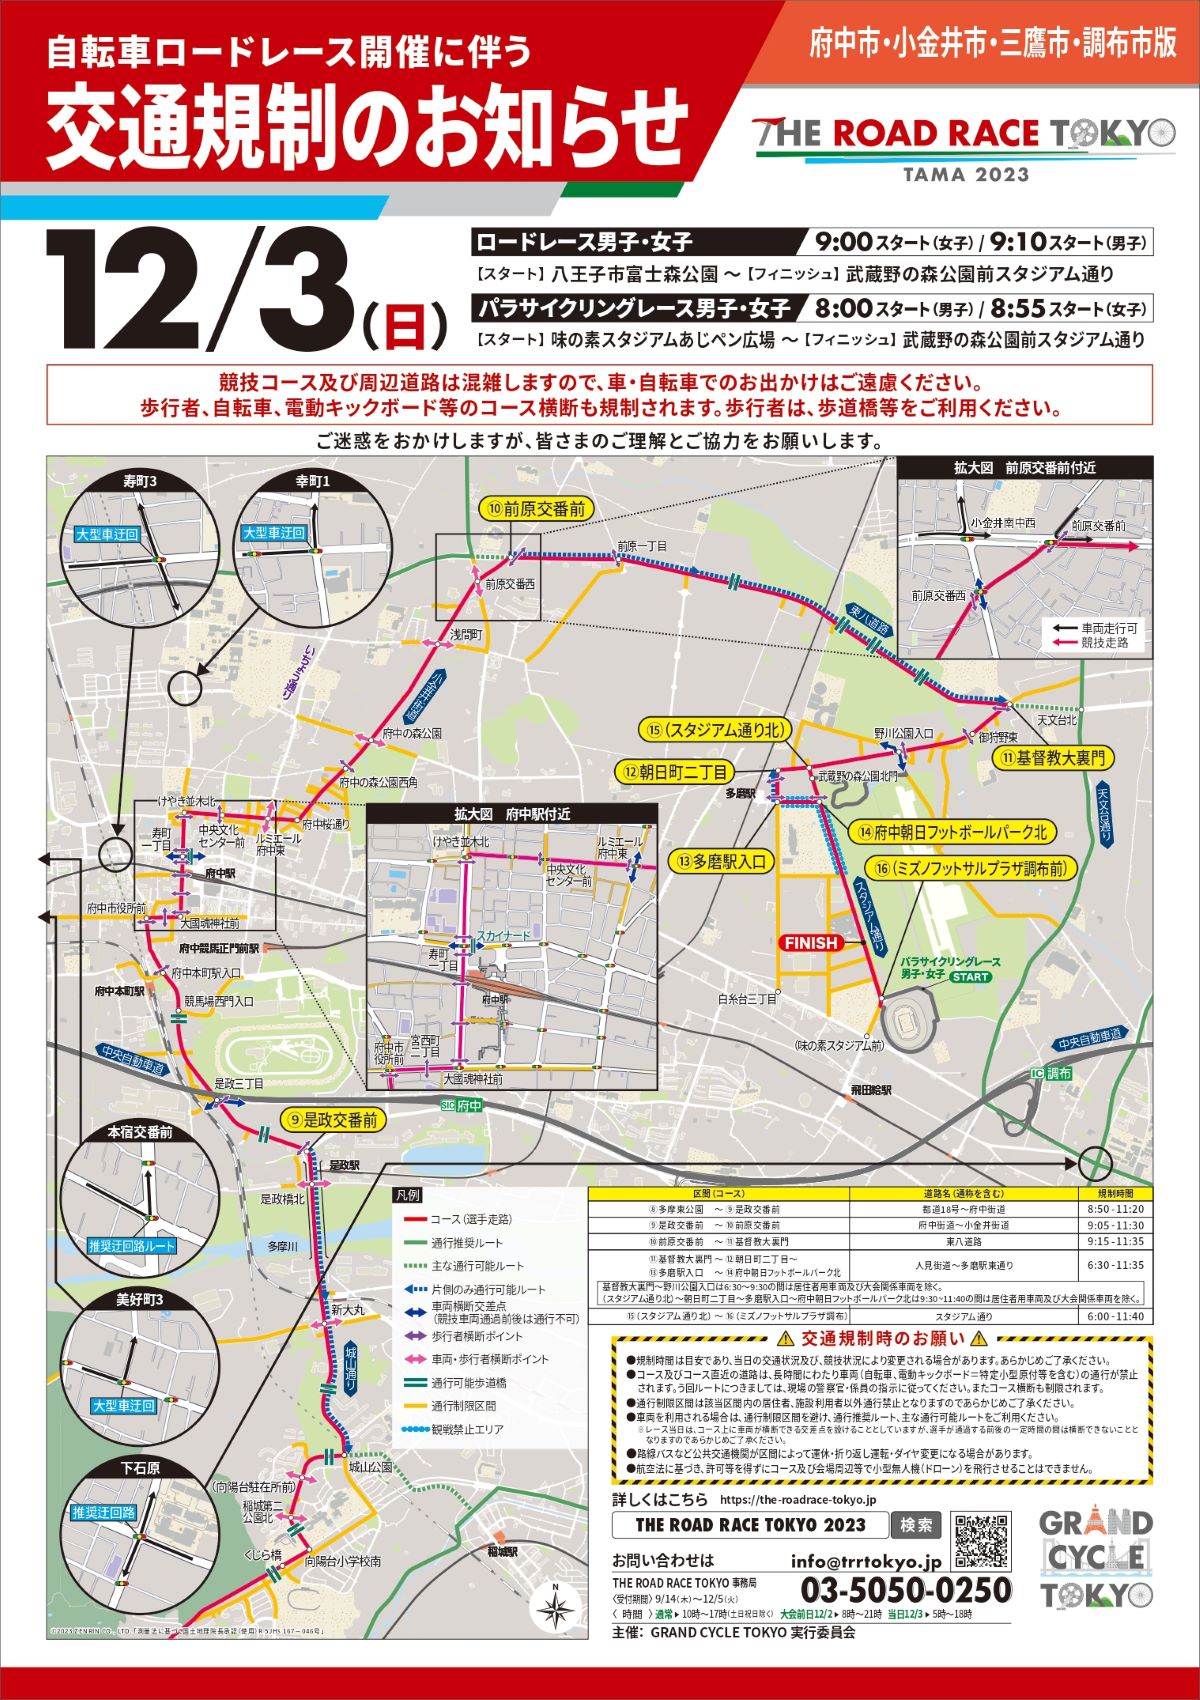 ロードレース東京・多摩 2023 交通規制図 府中市・小金井市・三鷹市・調布市